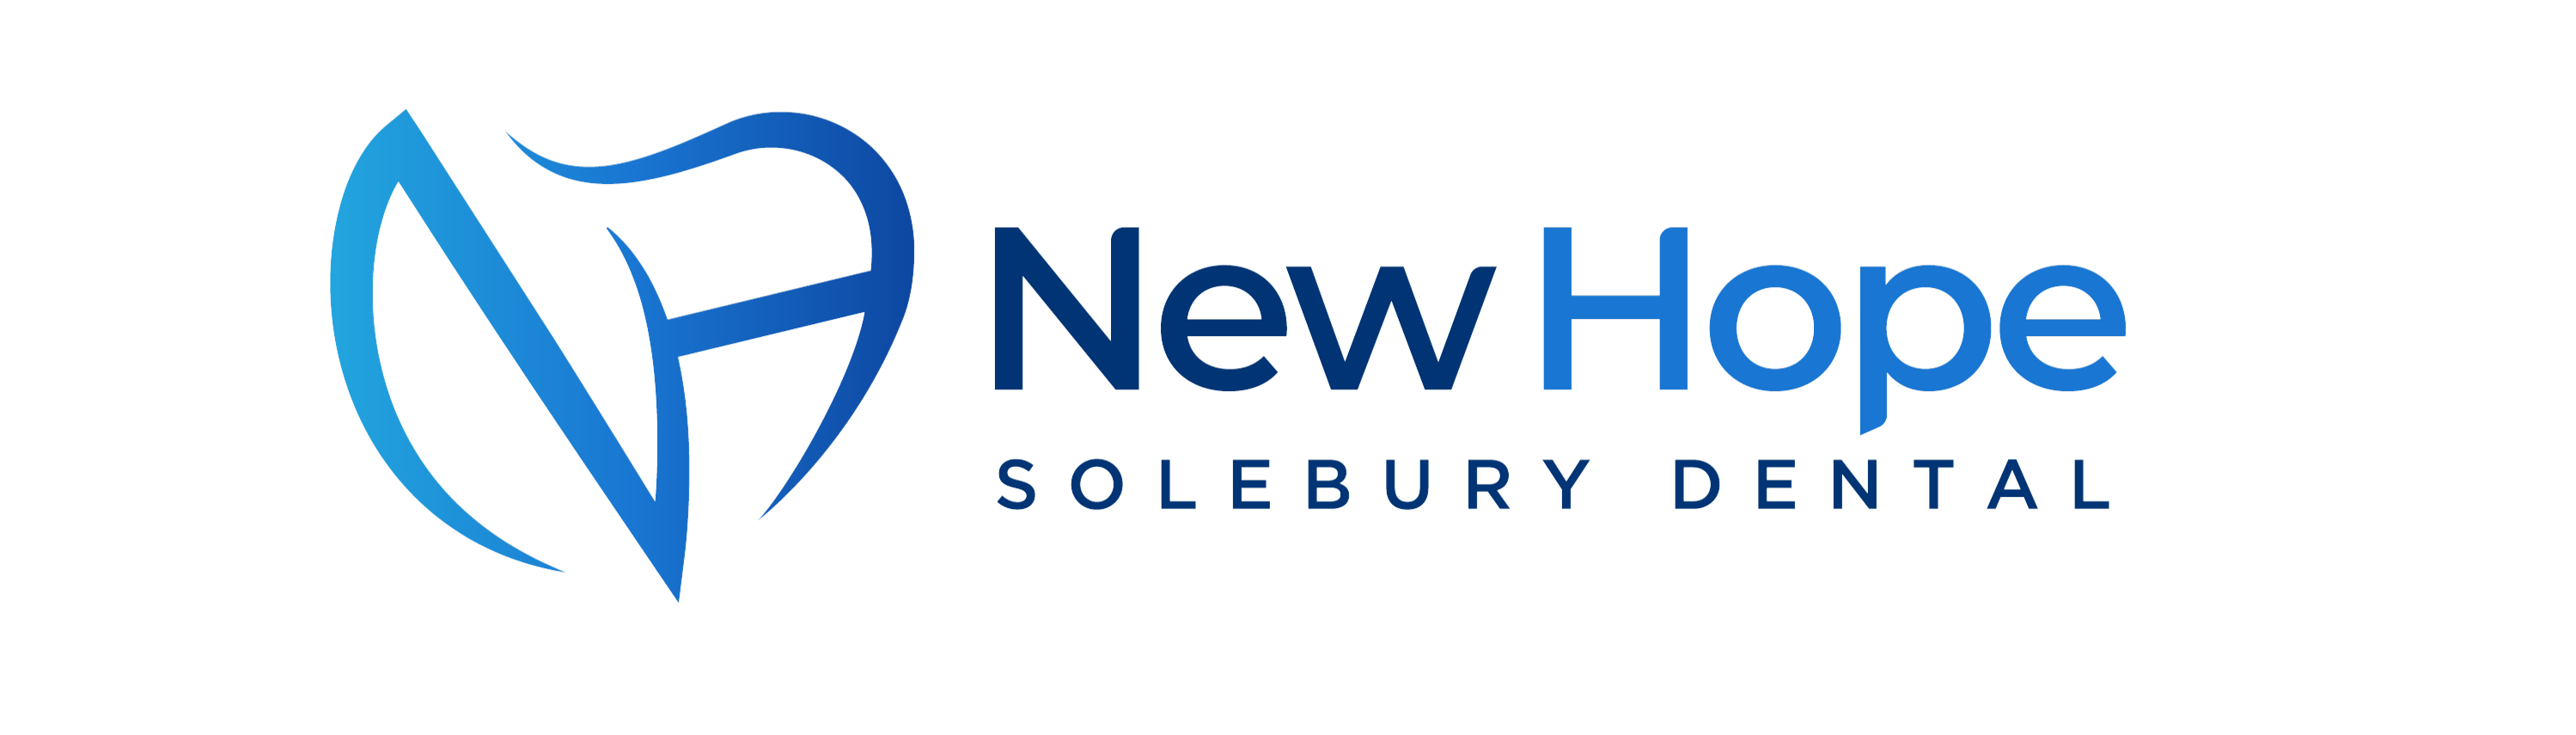 New Hope Solebury